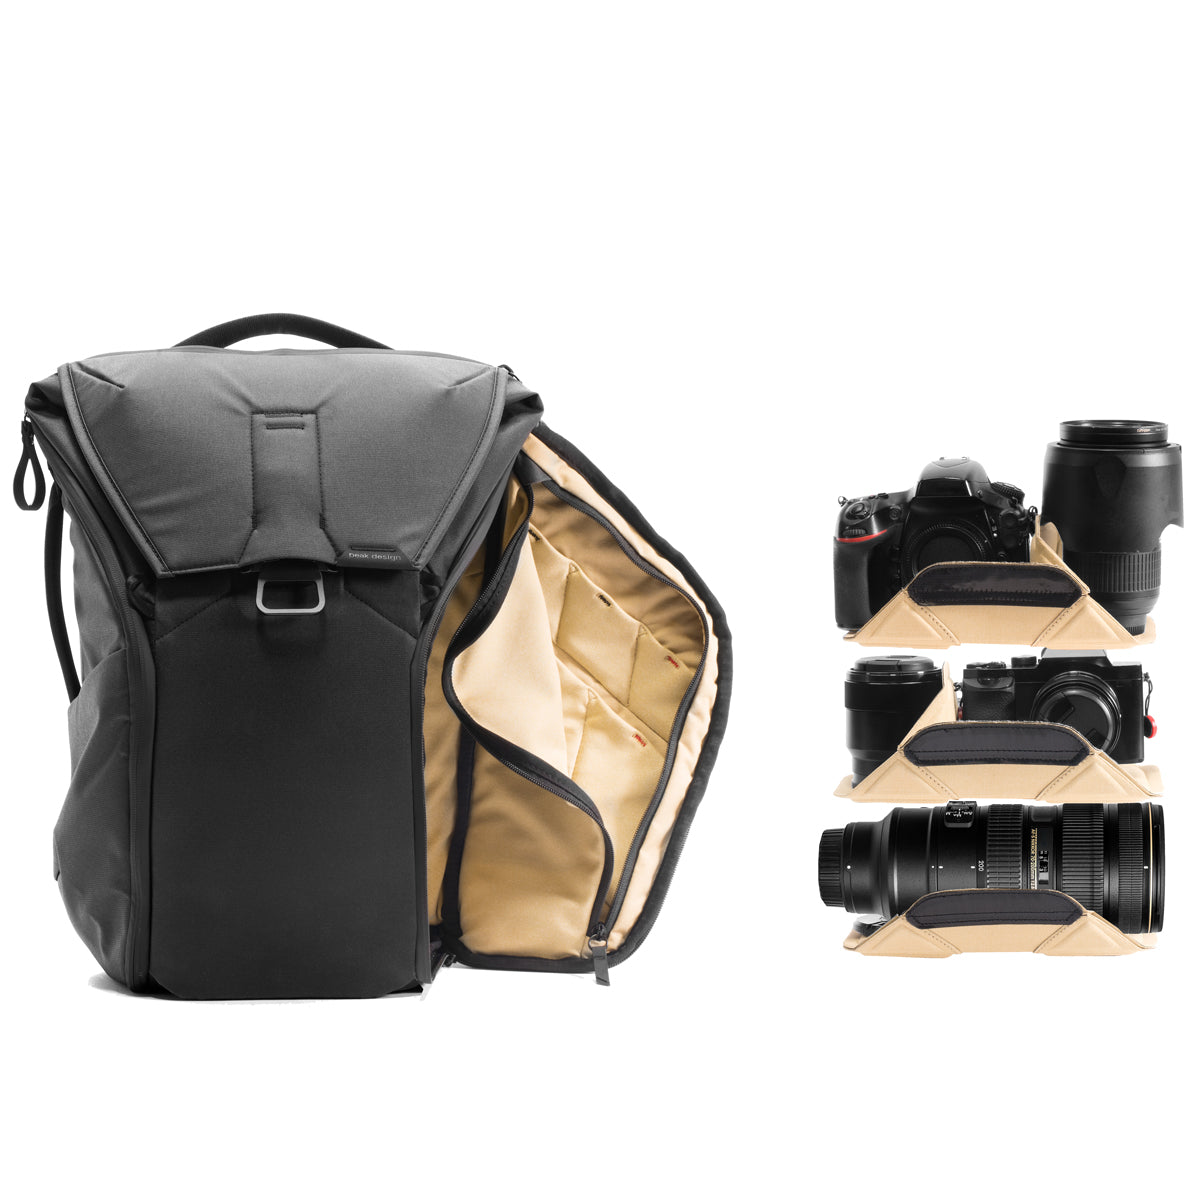 Peak Design Everyday Backpack 20L - Black